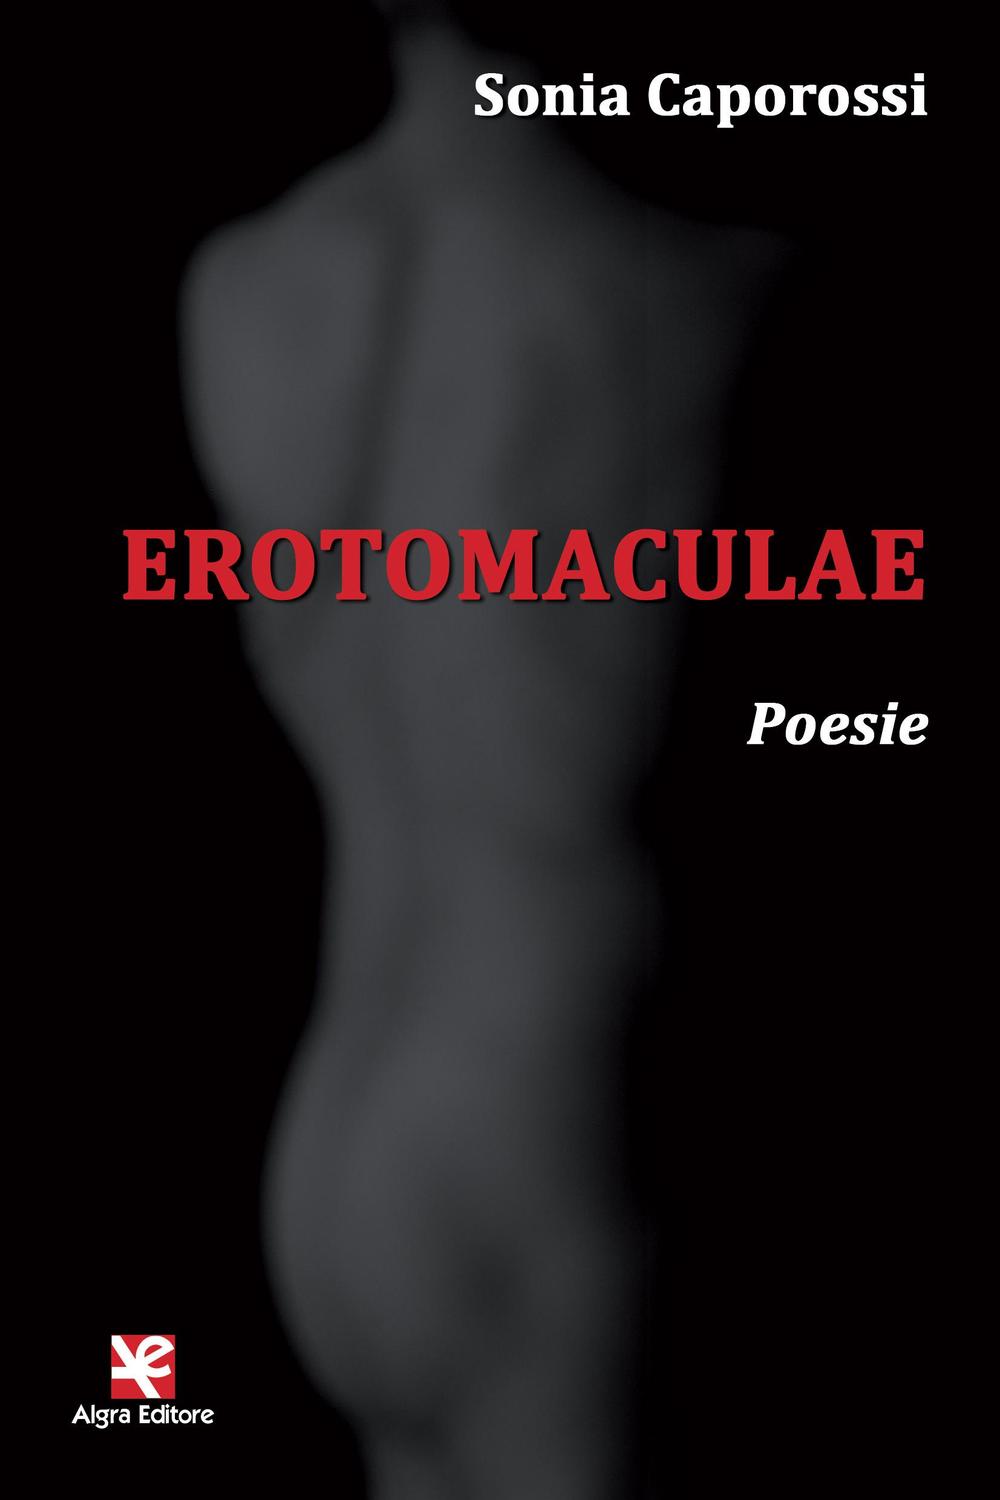 Erotomaculae